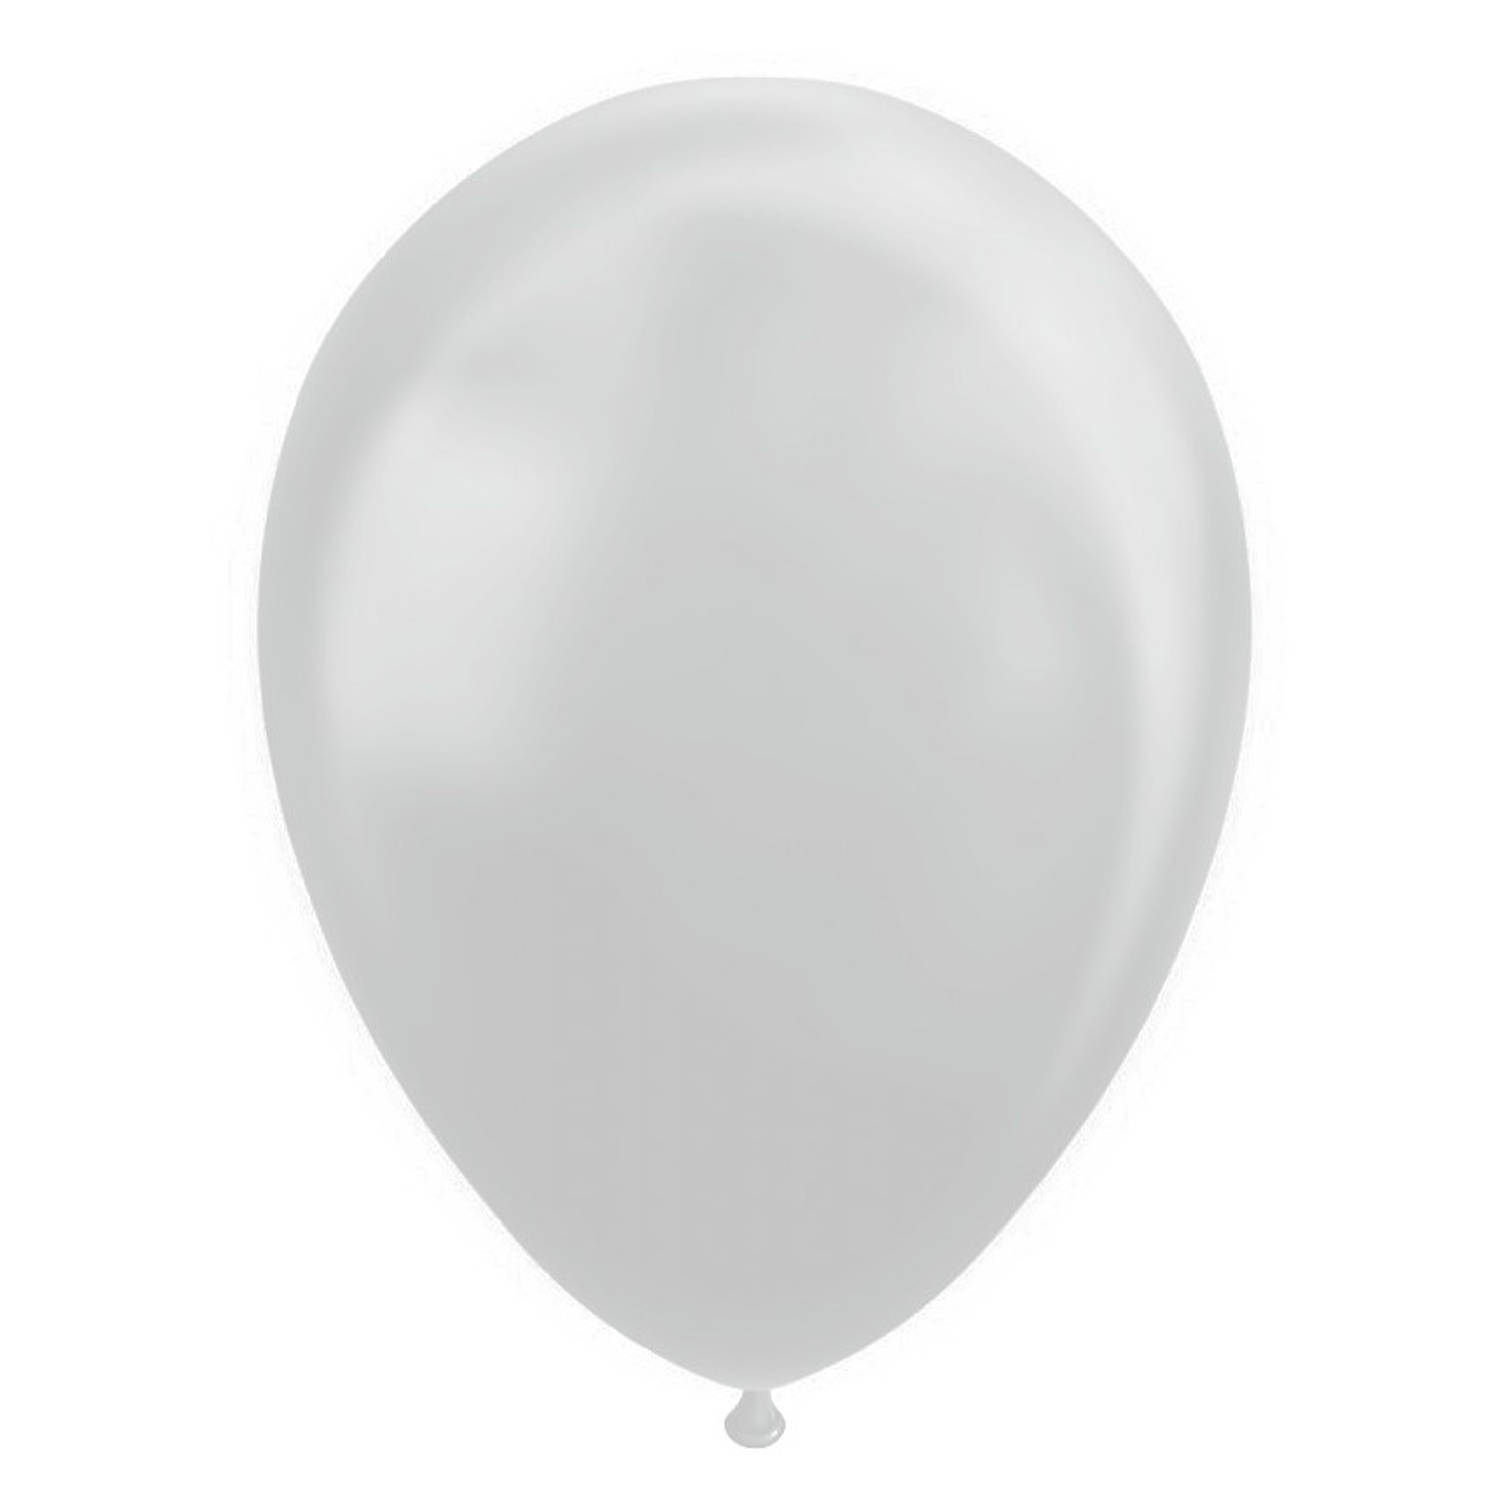 Wefiesta ballonnen 30 cm latex zilver 10 stuks